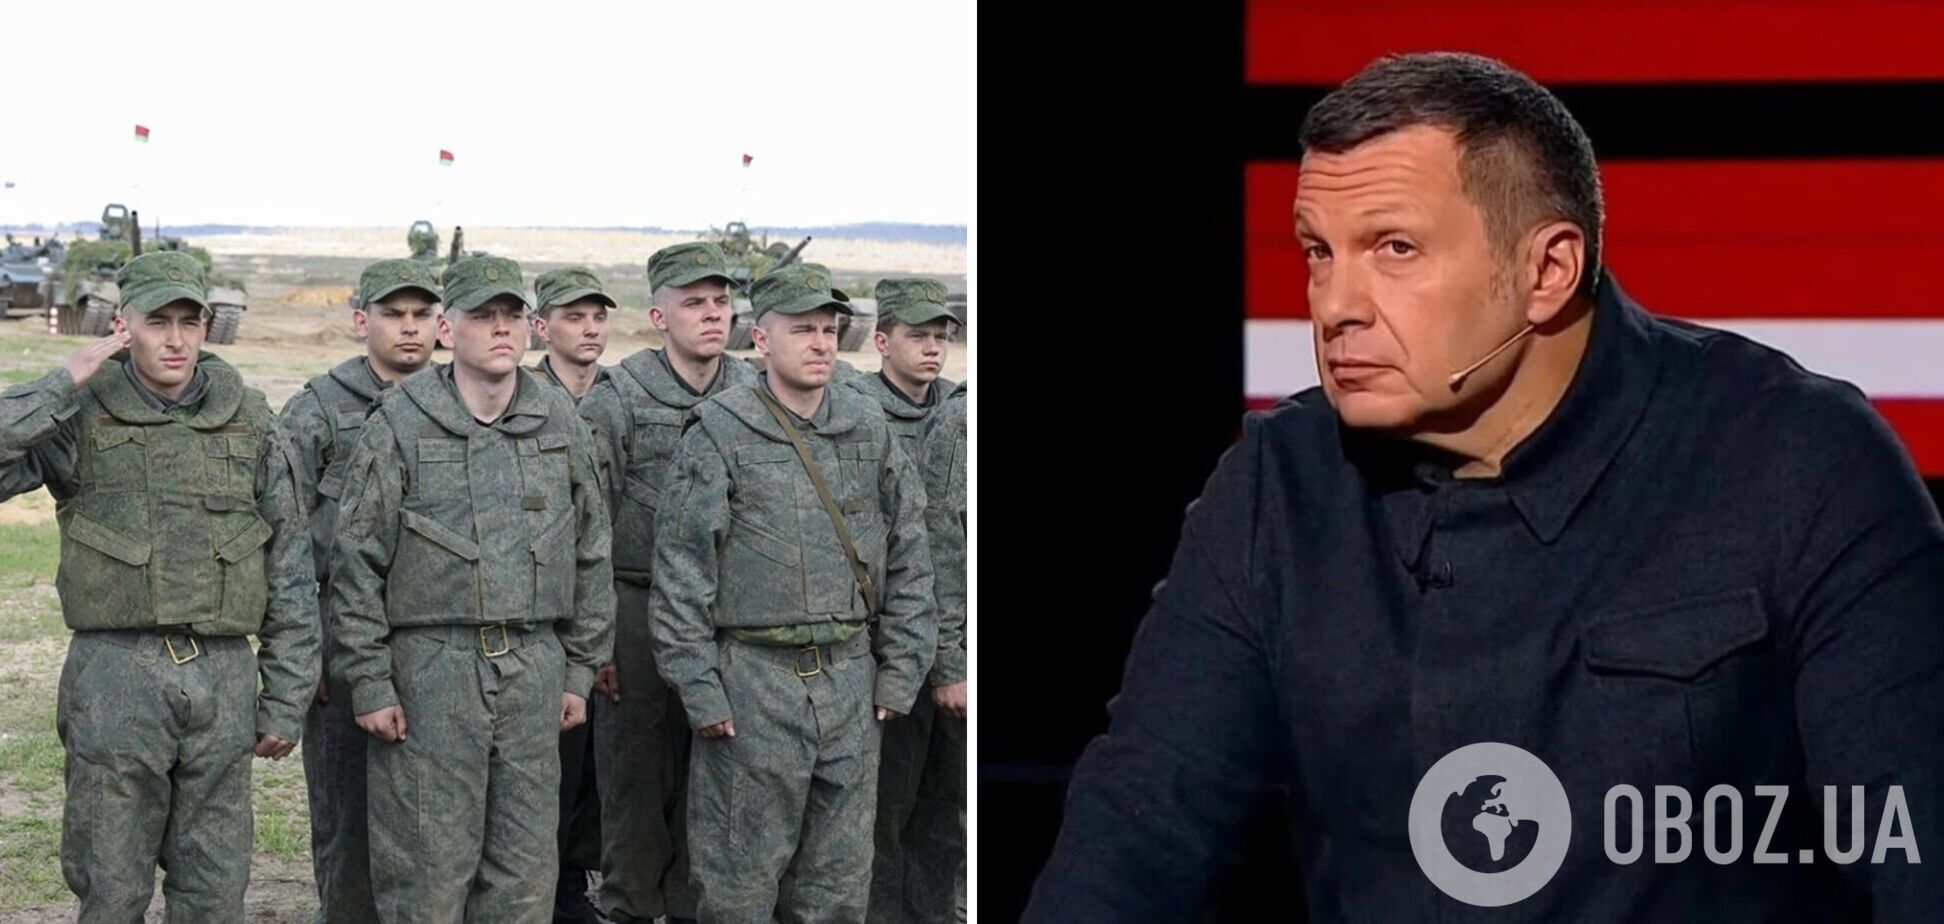 'Мы с НАТО воюем': Соловьев устроил истерику из-за жалоб российских 'мобиков' и набросился на военкоров. Видео